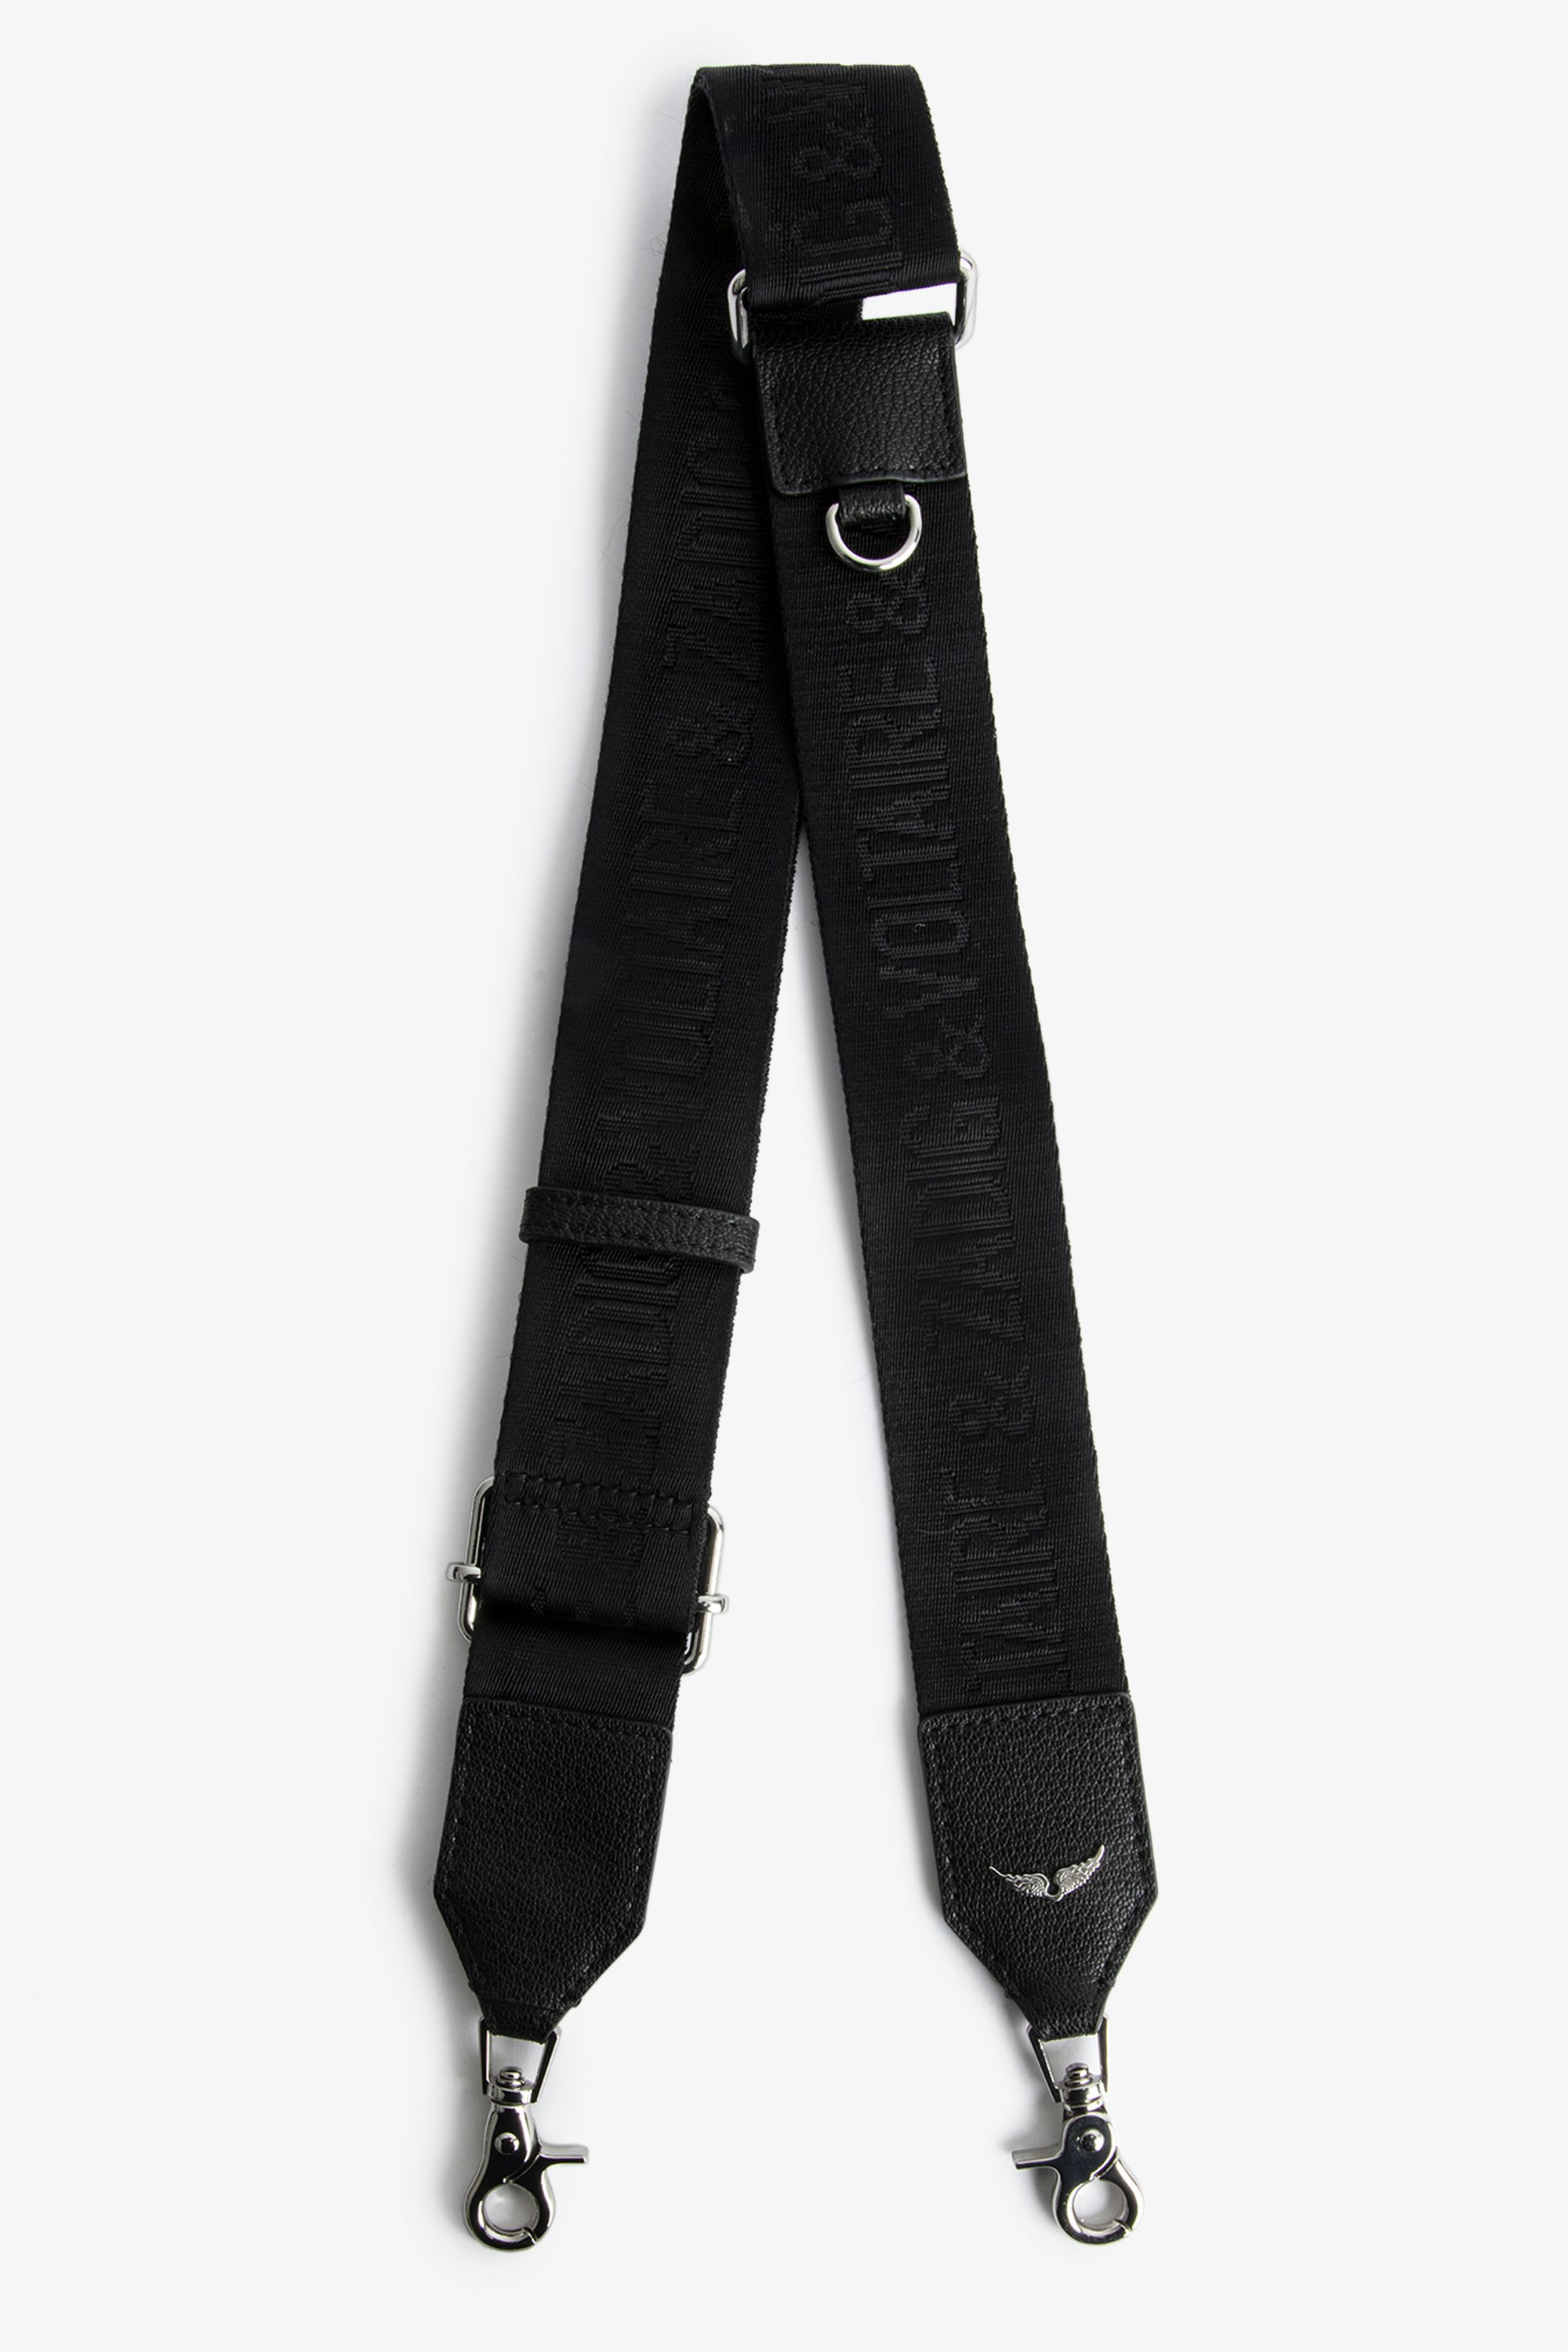 Zadig Shoulder Strap Black leather shoulder strap.